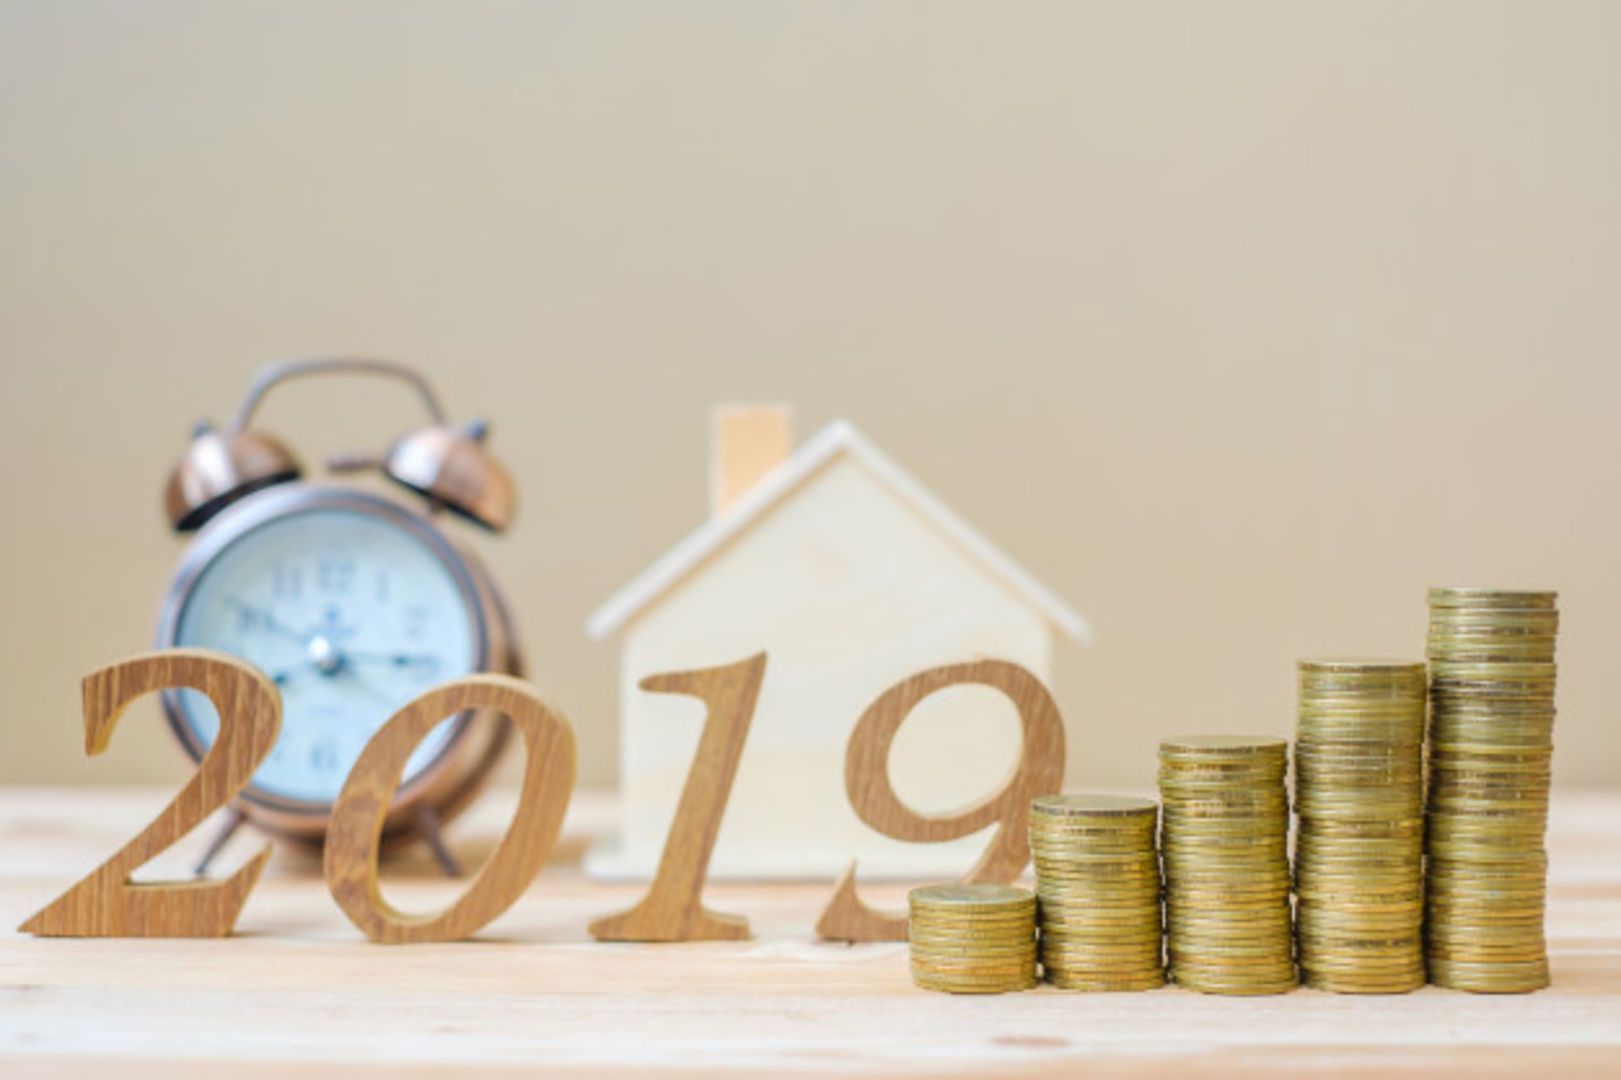 Grens Nationale Hypotheek Garantie omhoog in 2019 image